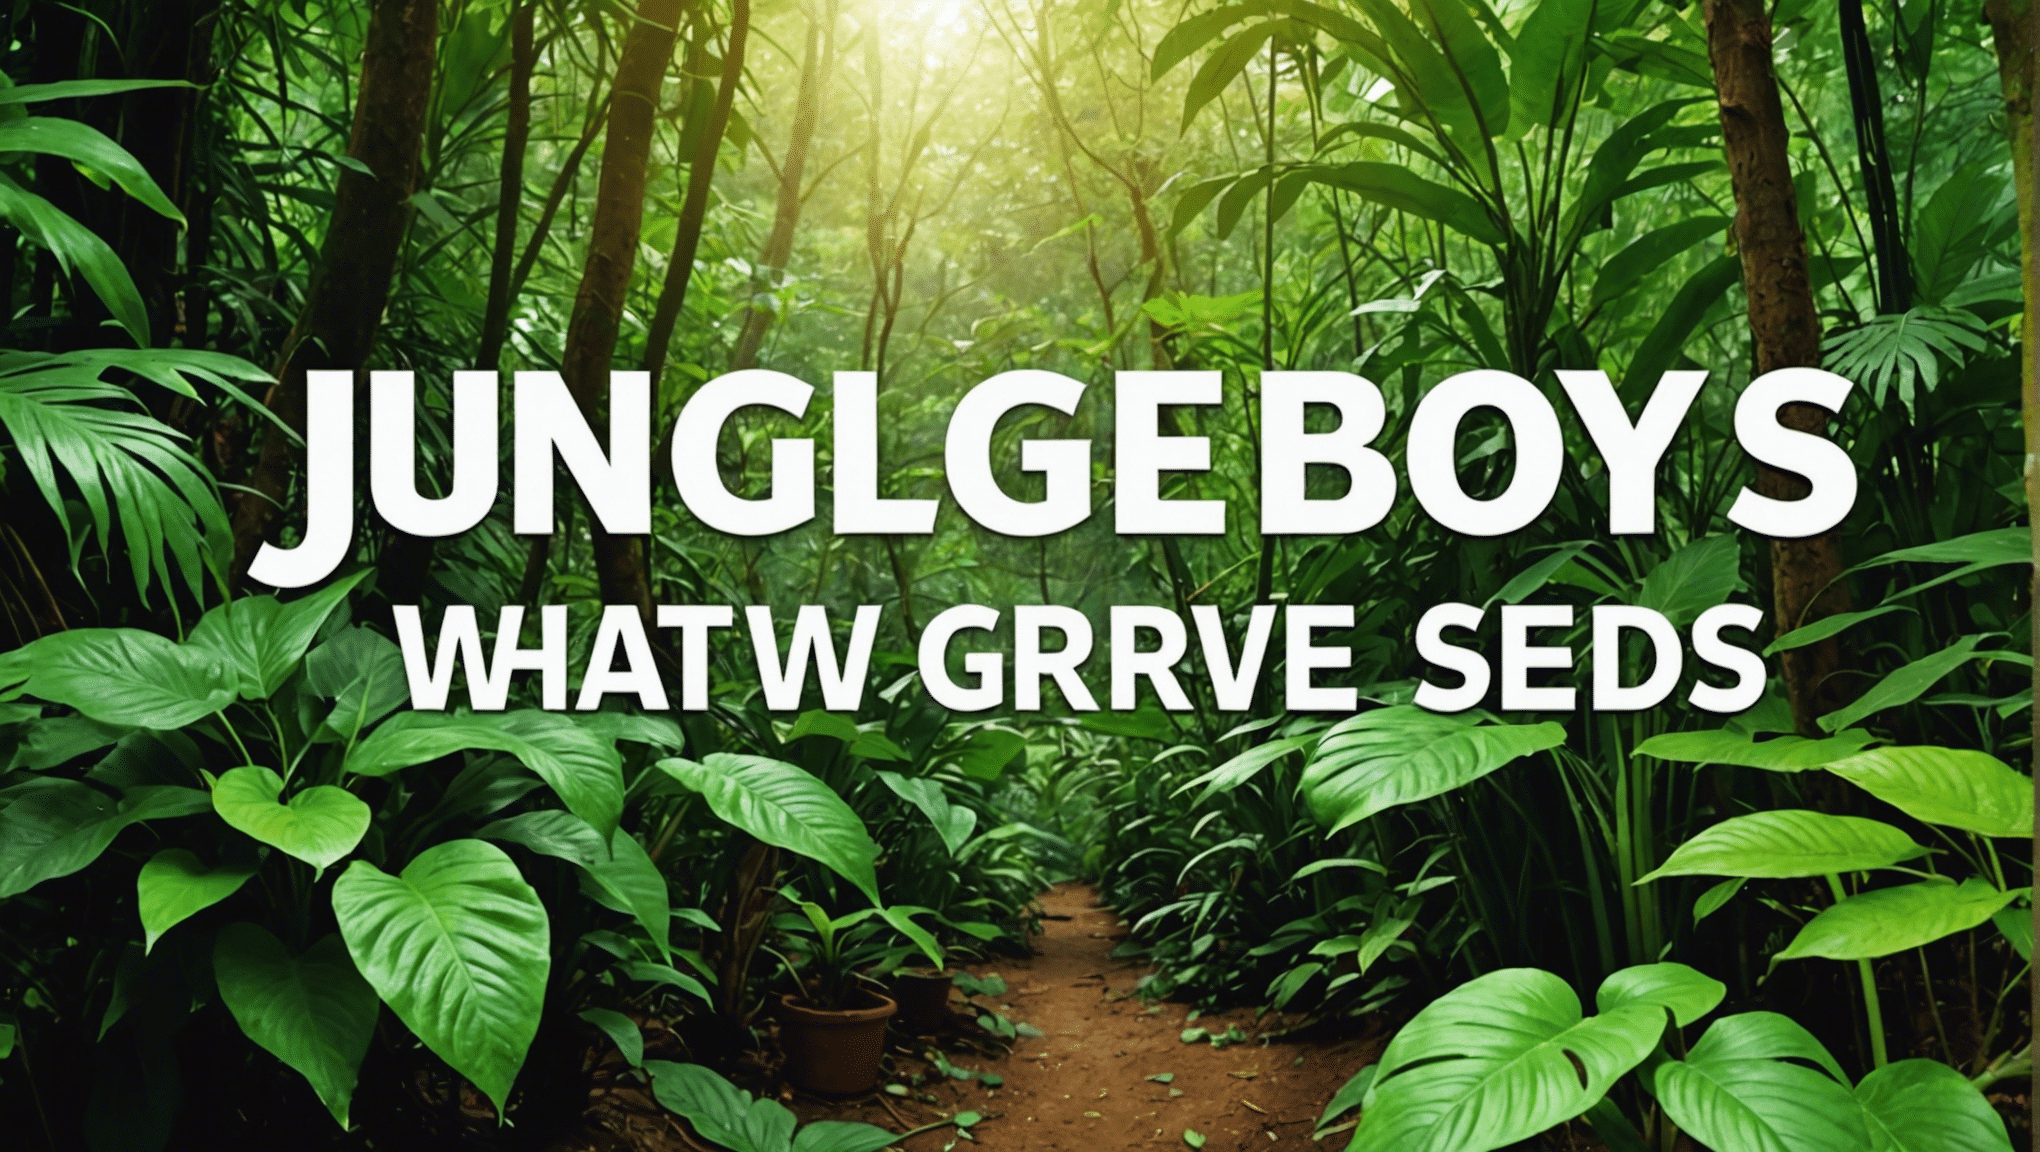 découvrez l'importance des graines de Jungle Boys et leur processus de croissance dans ce guide complet. découvrez les caractéristiques uniques et les techniques de culture des graines de Jungle Boys.